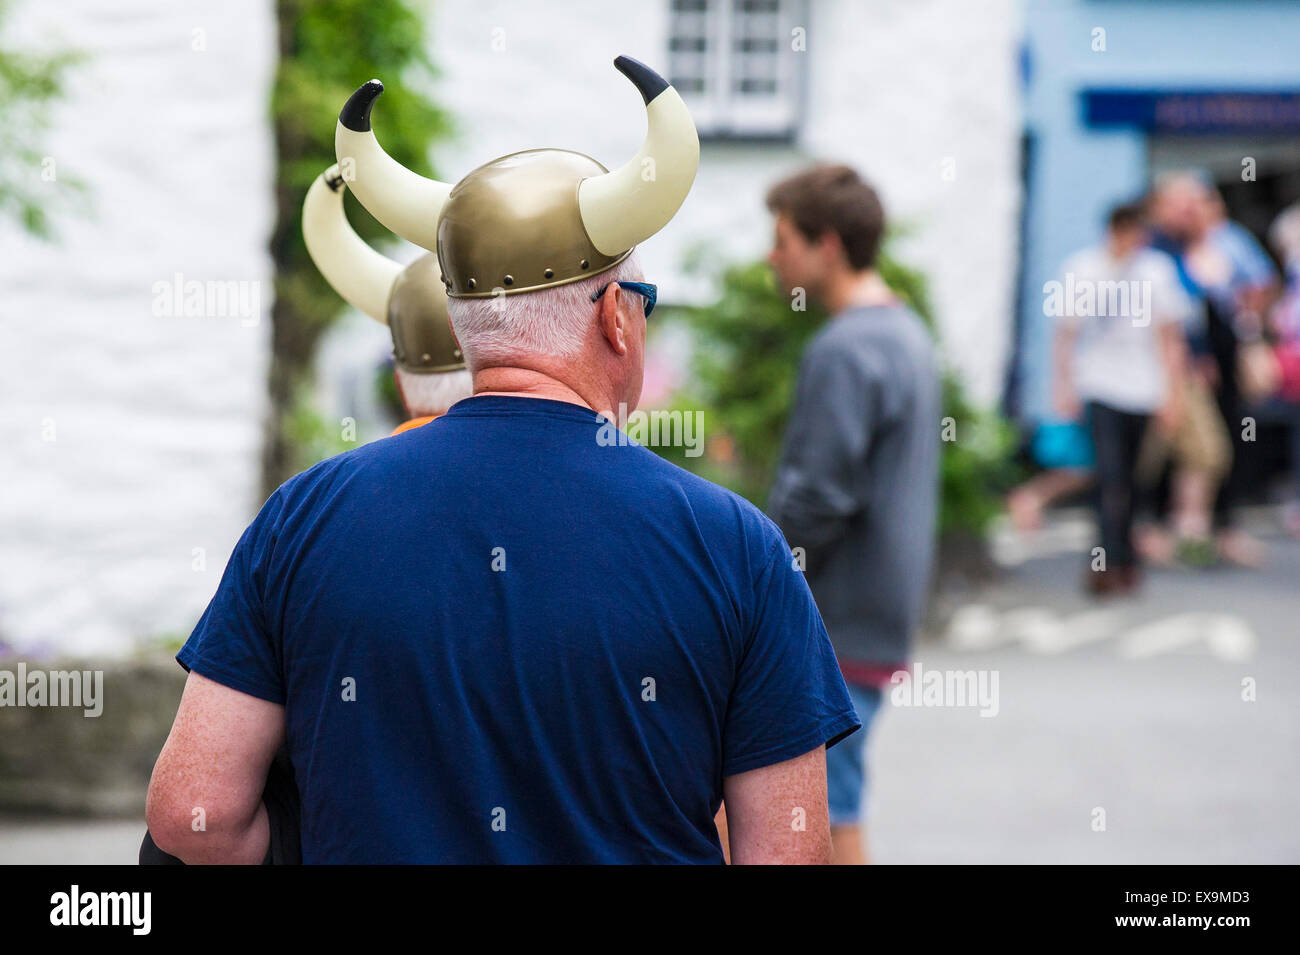 Deux touristes portant des casques vikings en plastique ; Banque D'Images